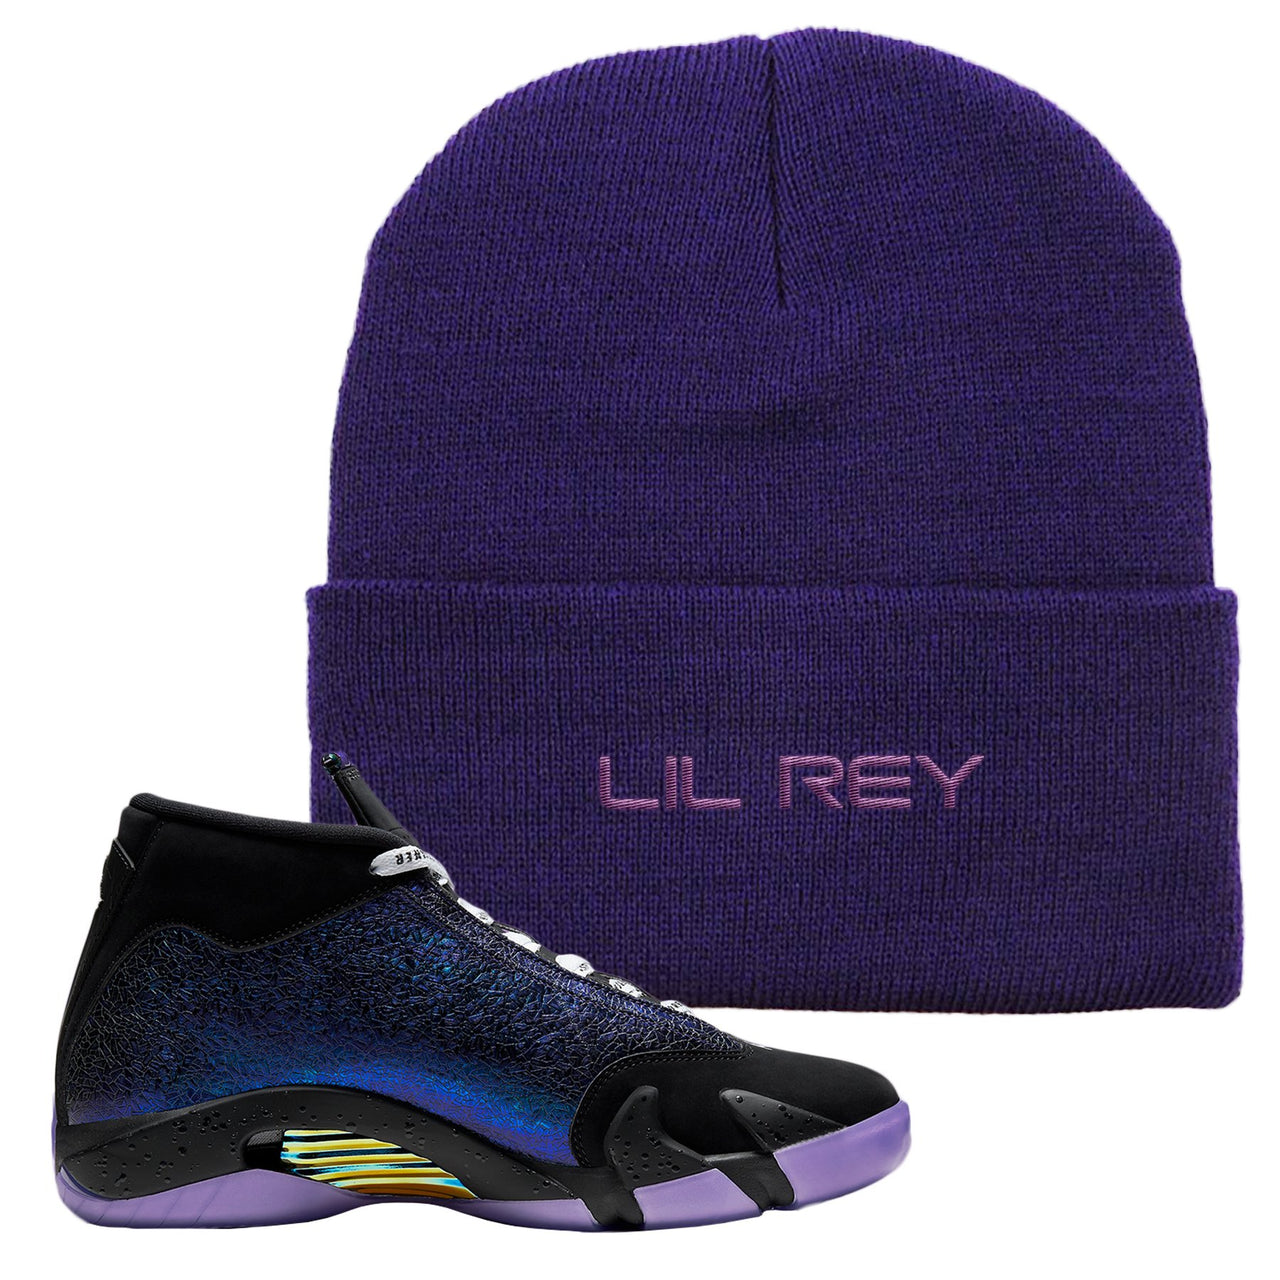 Doernbecher 14s Beanie | Lil Rey, Purple